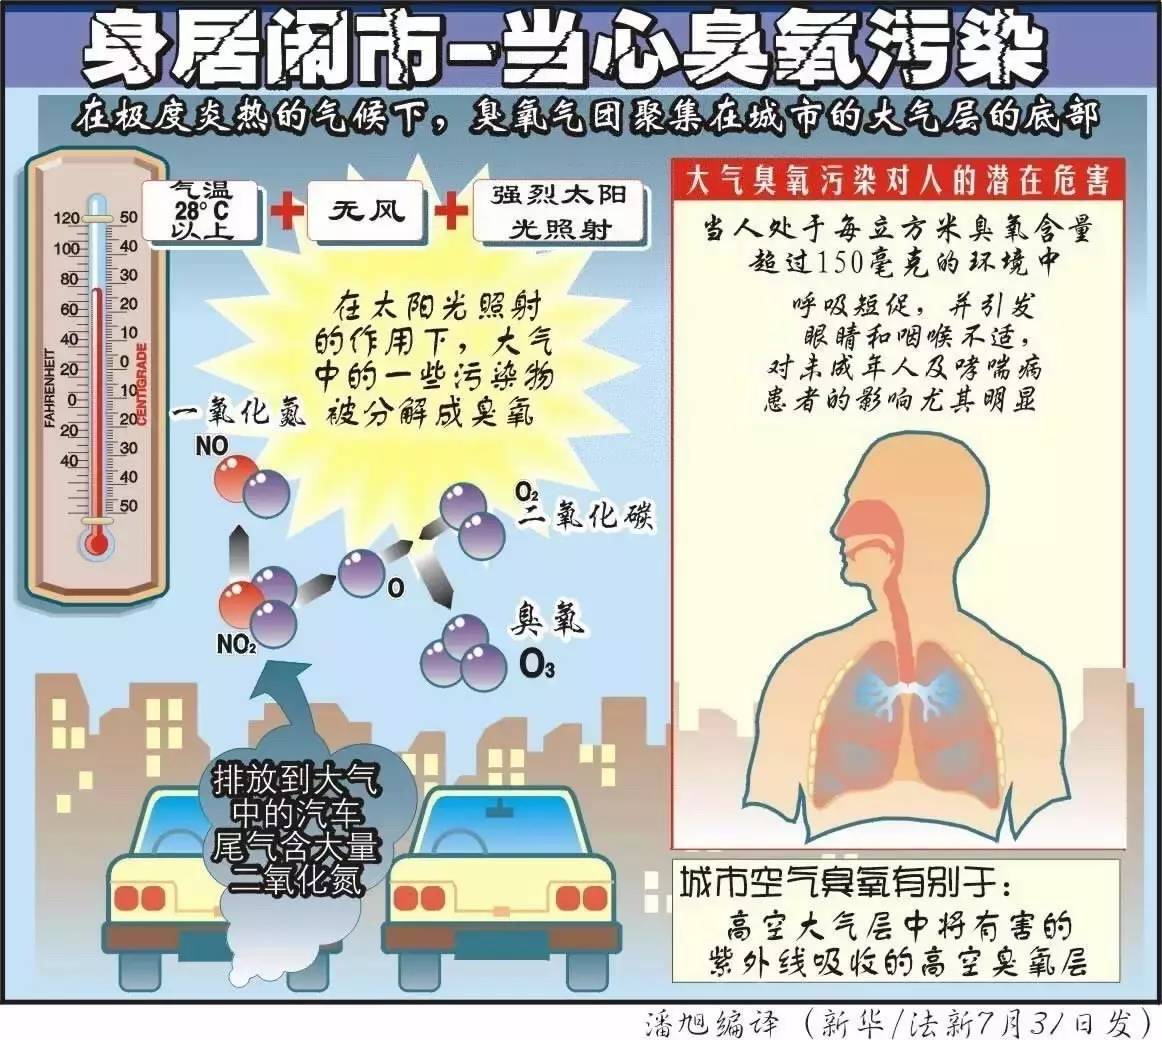 环保部副部长赵英民:近几年臭氧污染显现,vocs尚未有效控制